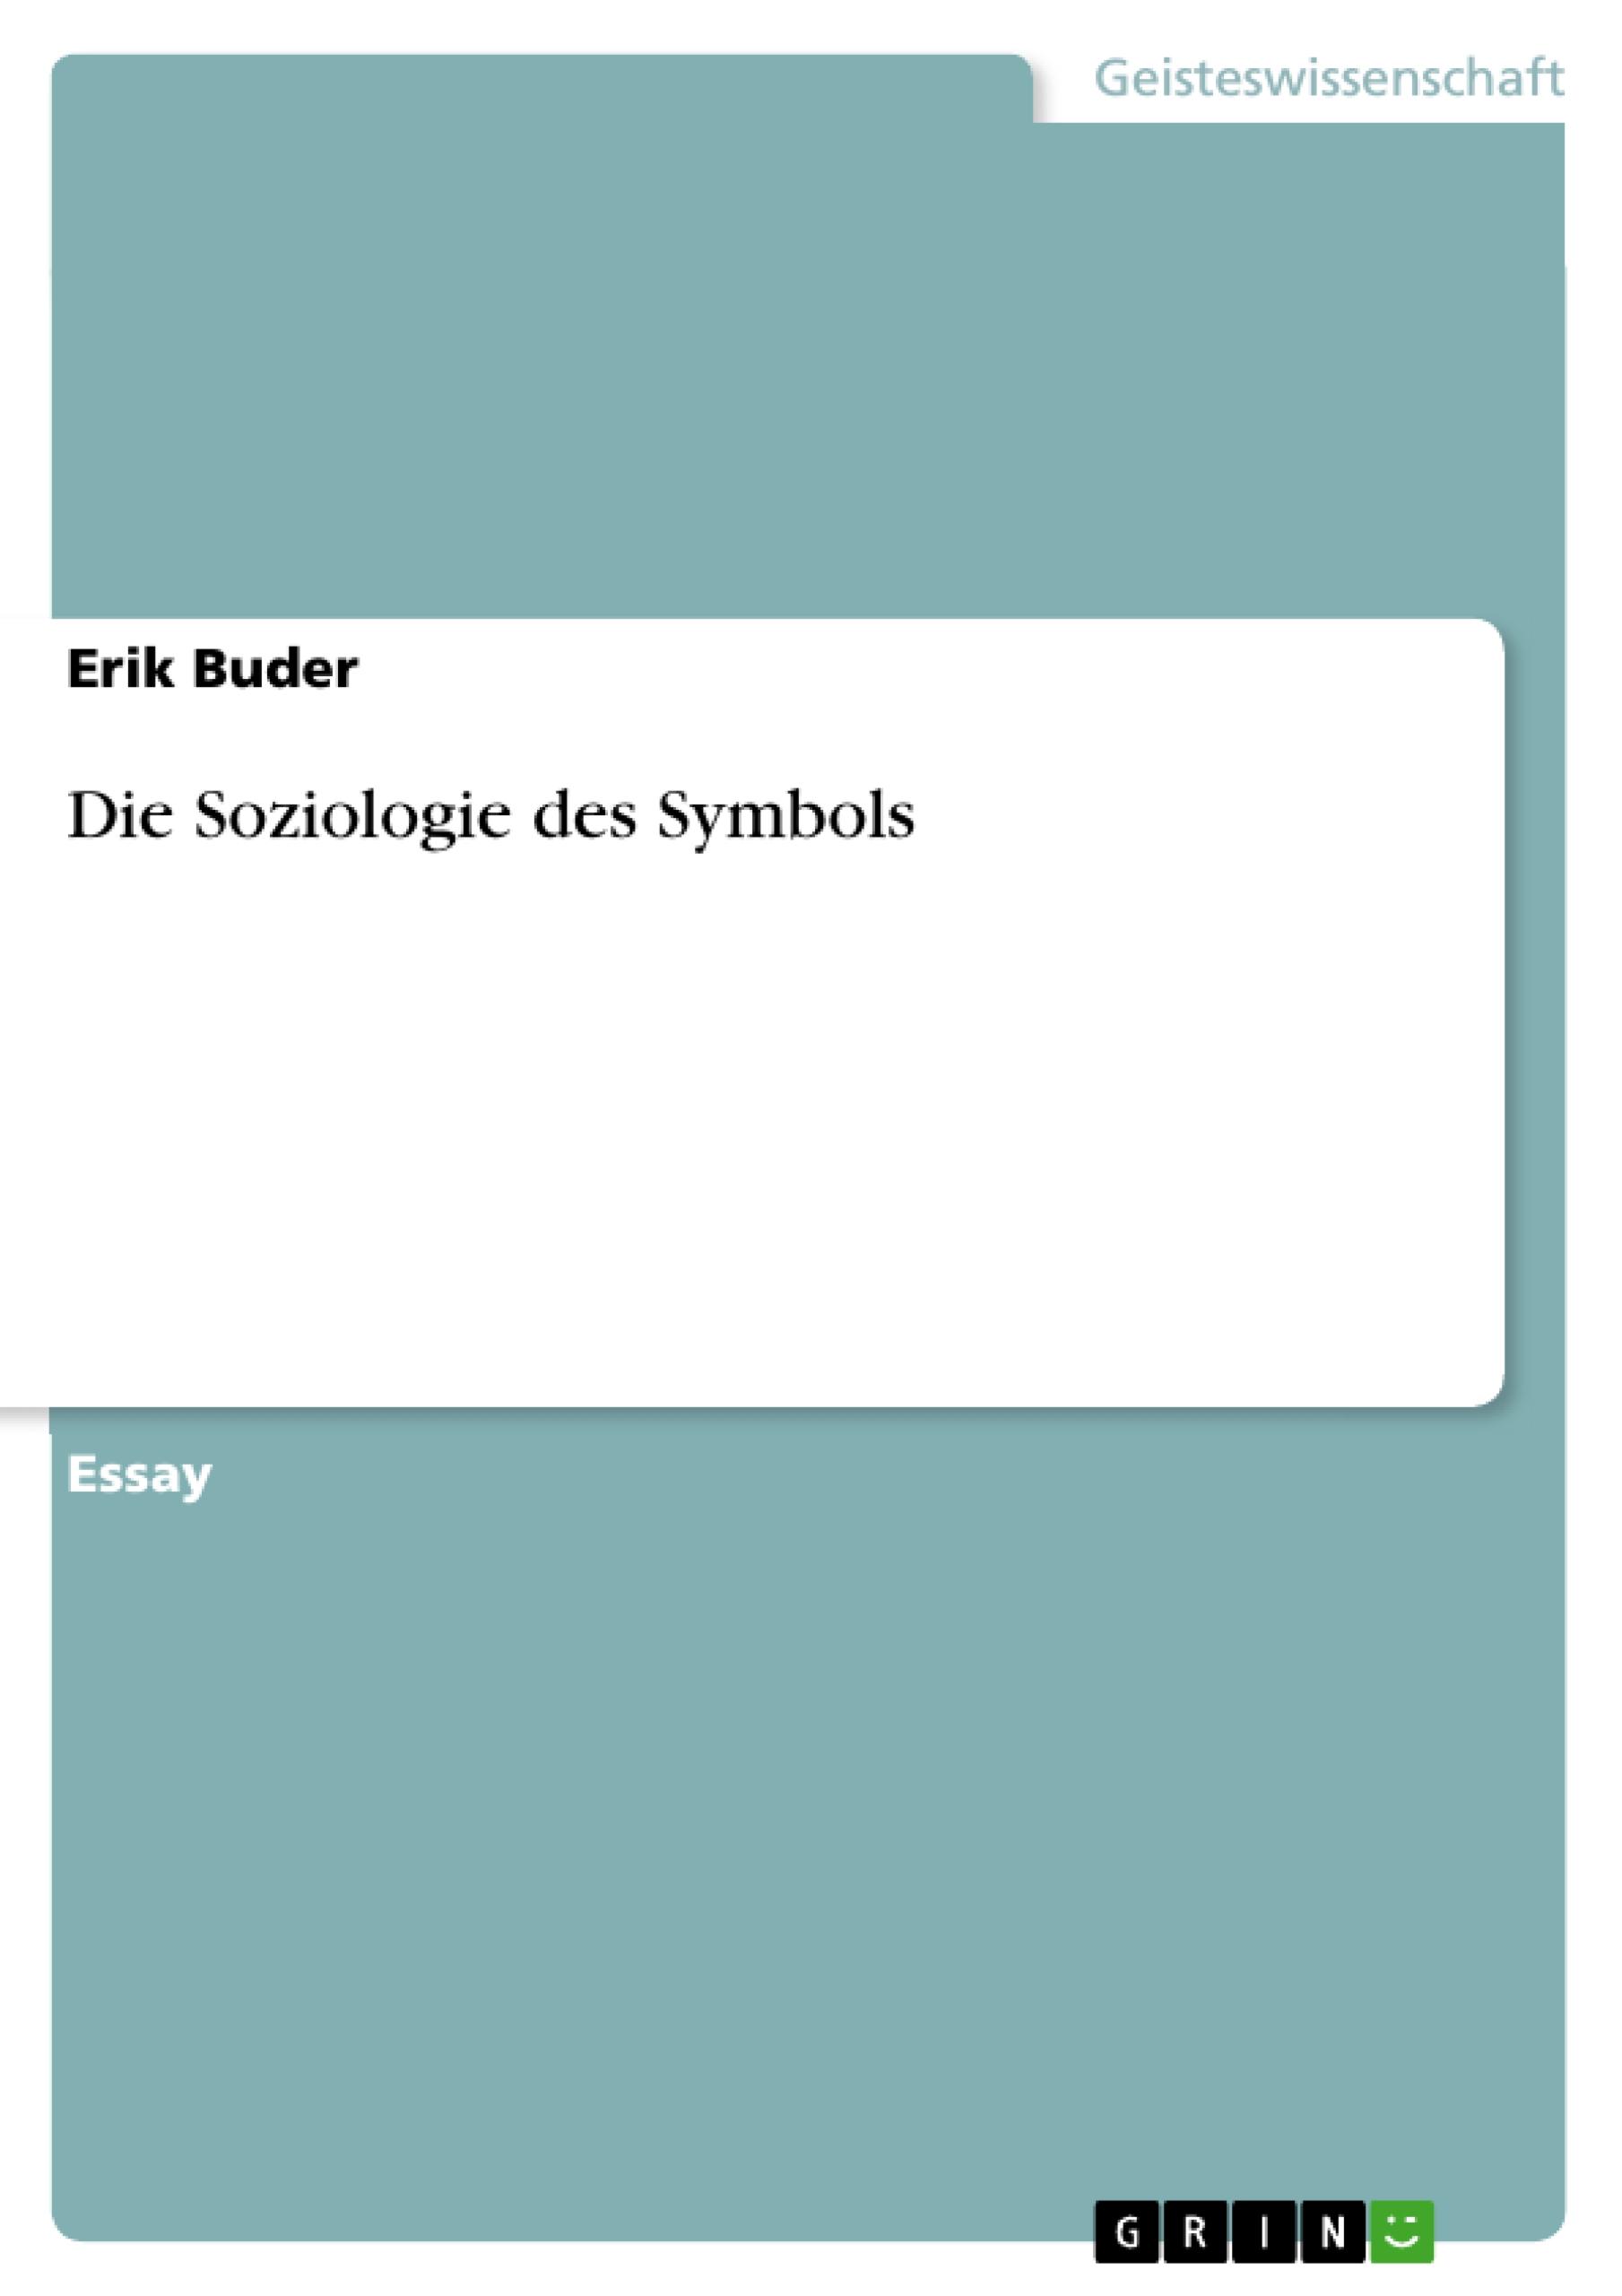 Die Soziologie des Symbols - Buder, Erik